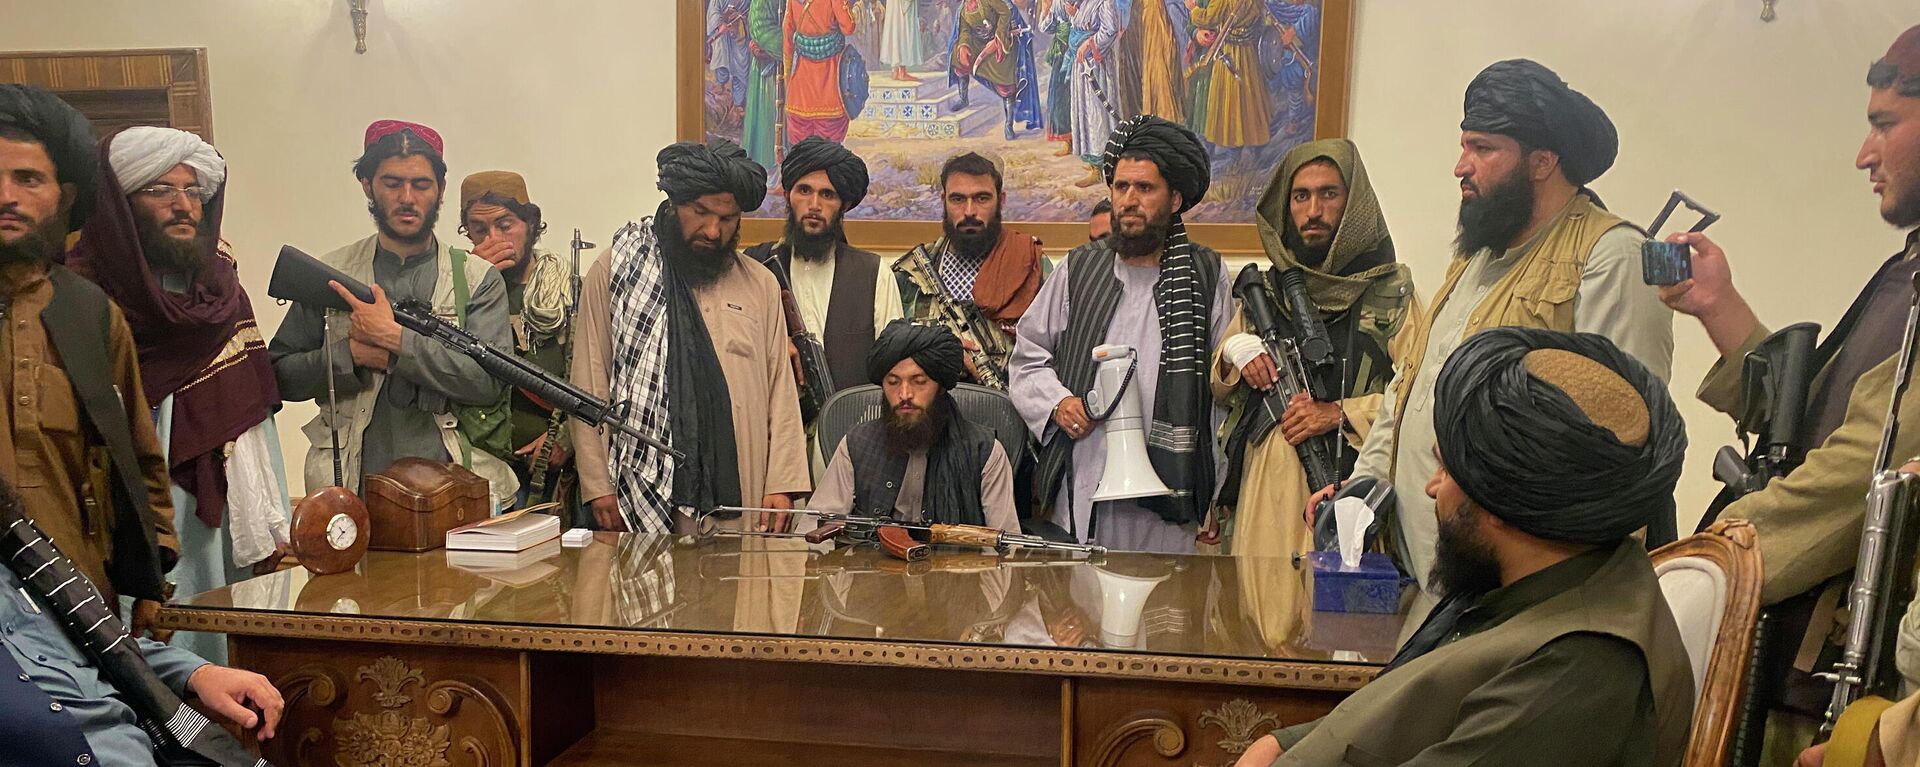 Боевики Талибана в президентском дворце в Кабуле, Афганистан - Sputnik Ўзбекистон, 1920, 02.09.2021